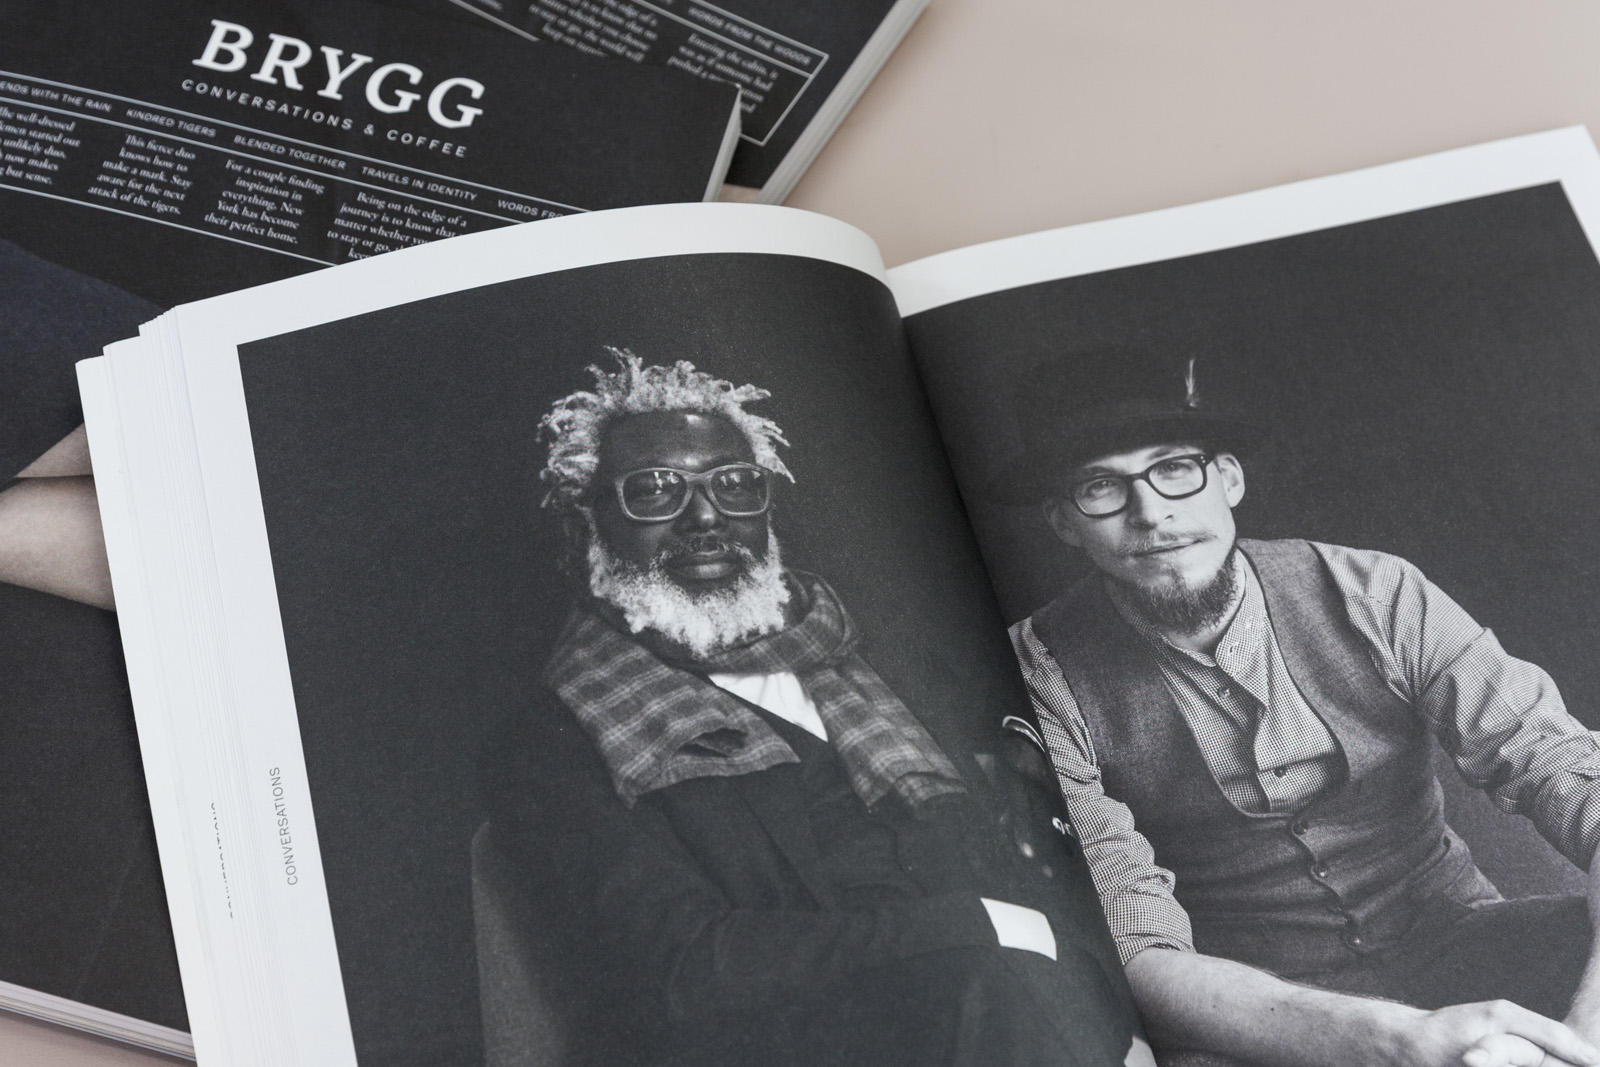 BryggMagazine#9